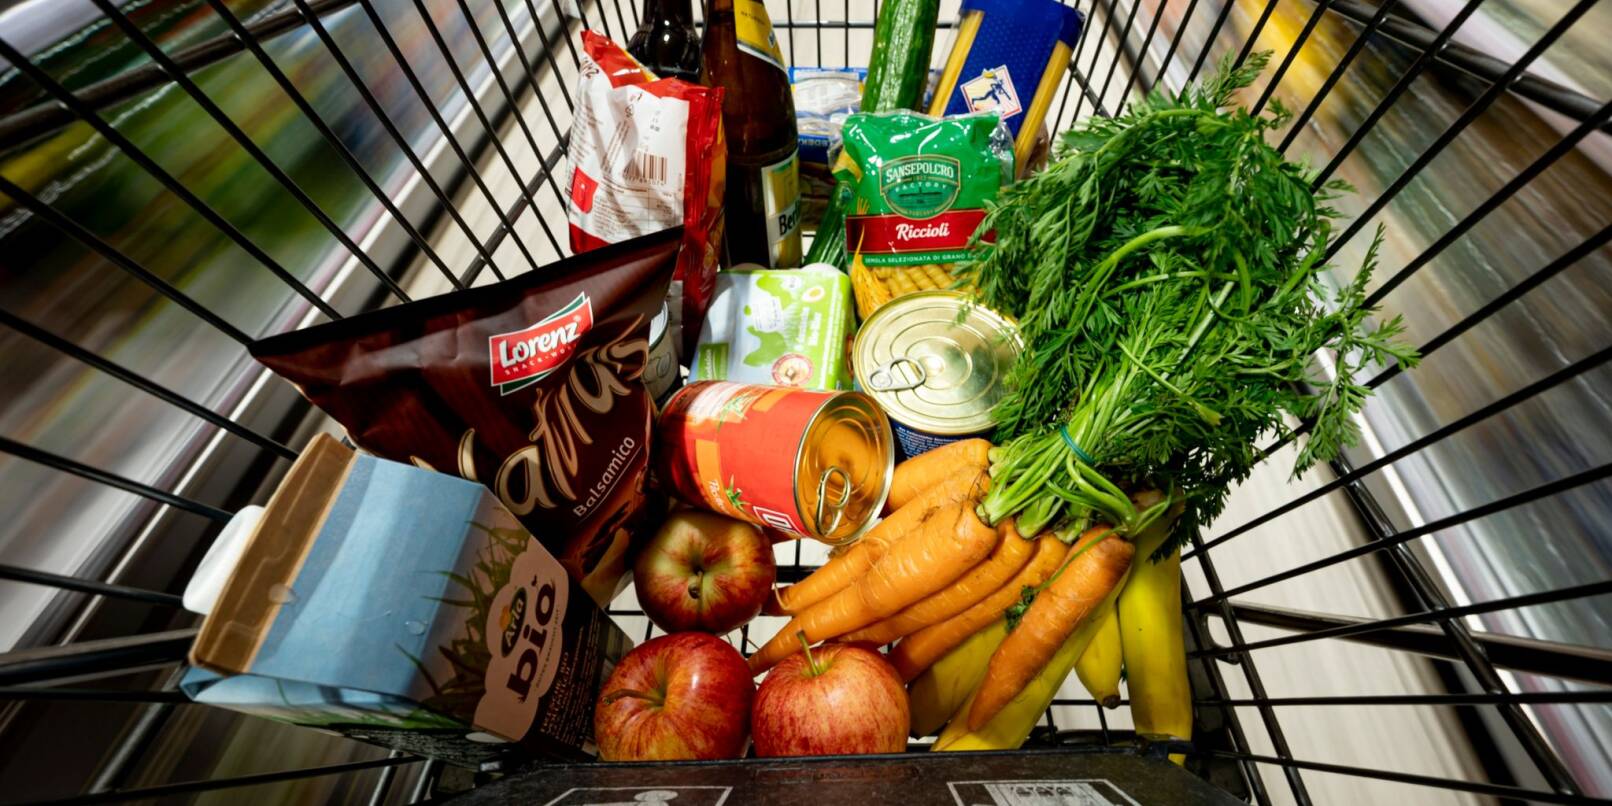 Lebensmittel liegen in einem Einkaufswagen in einem Supermarkt.